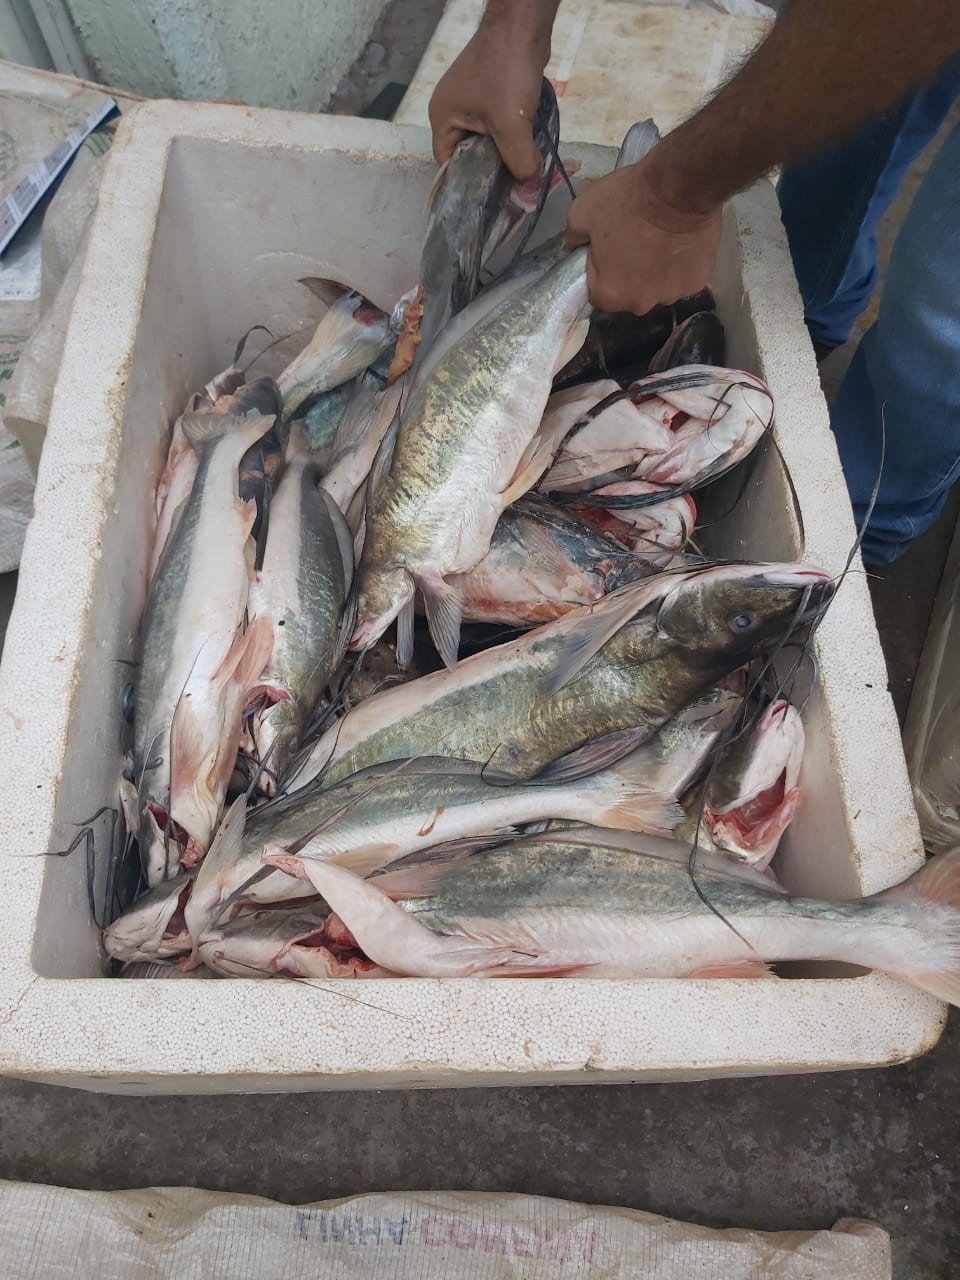 Quase 100 kg de pescado irregular são apreendidos pela Polícia Militar em MT